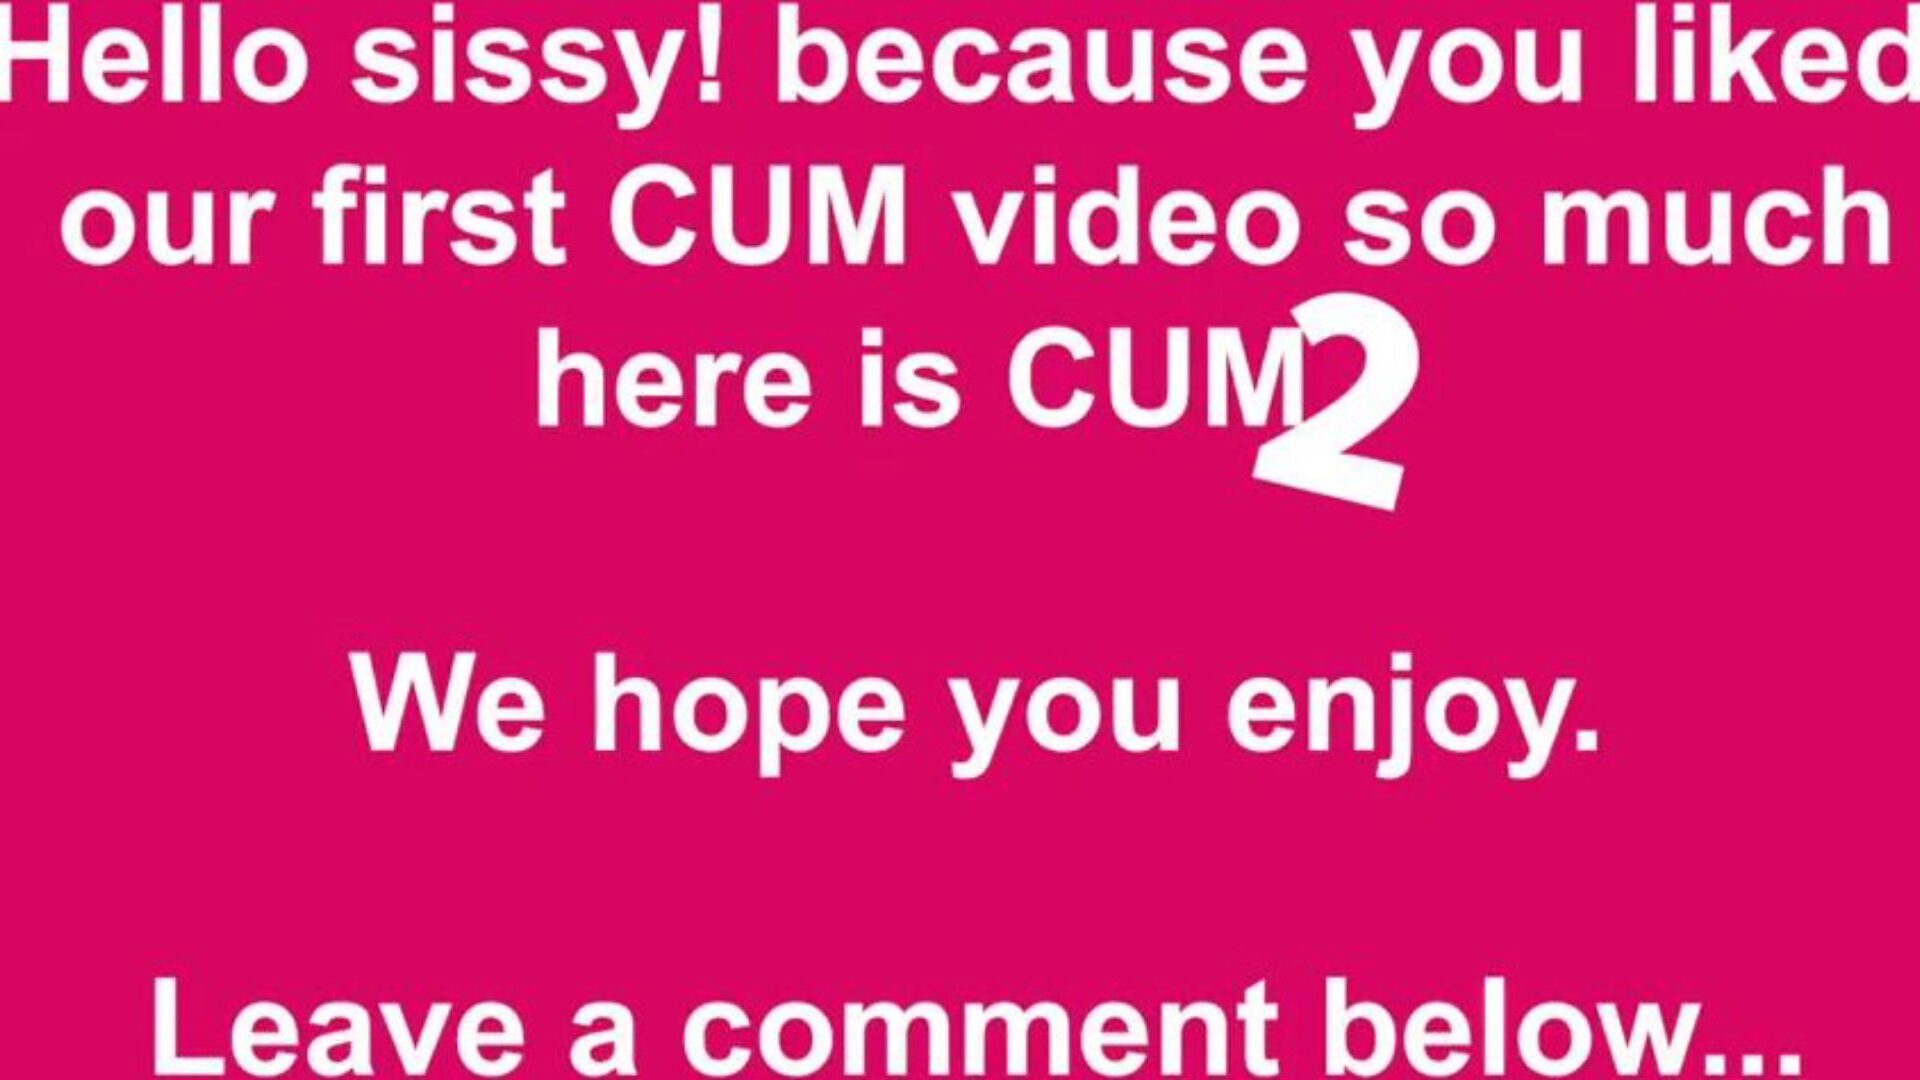 cum 2 free cum & cumming tube porno video 49 - xhamster schau dir die cum 2 tube hook-up-Folge kostenlos auf xhamster an, mit der dominanten Schar von kostenlosen cum cumming tube & tube zwei HD-Porno-Episoden-Gigs